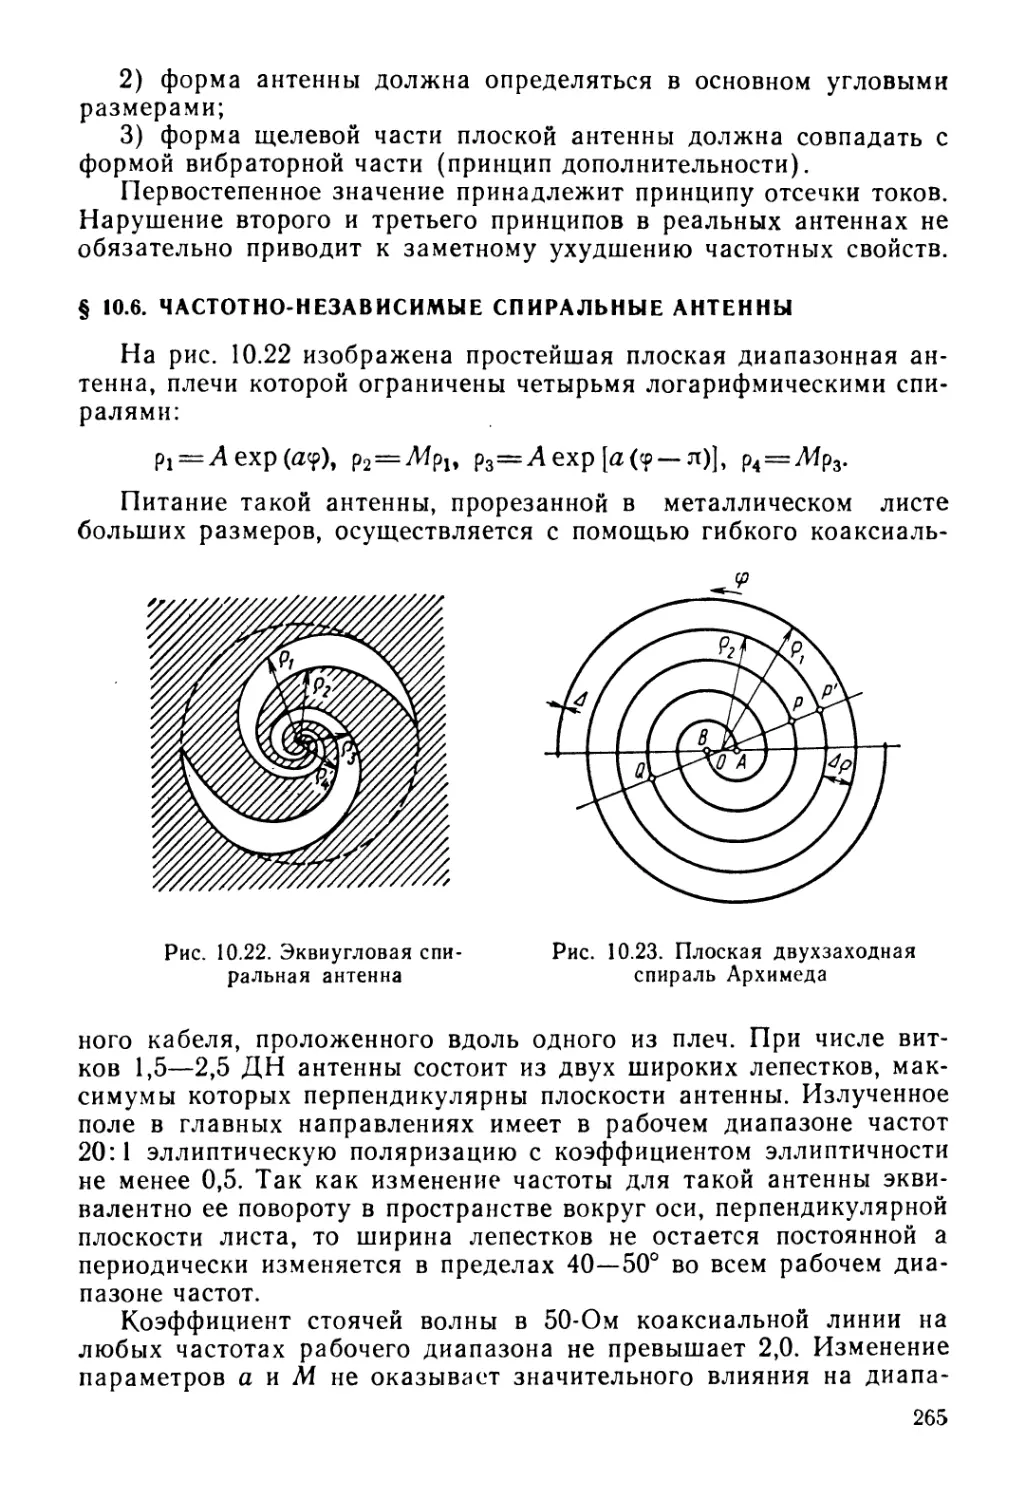 § 10.6. Частотно-независимые спиральные антенны